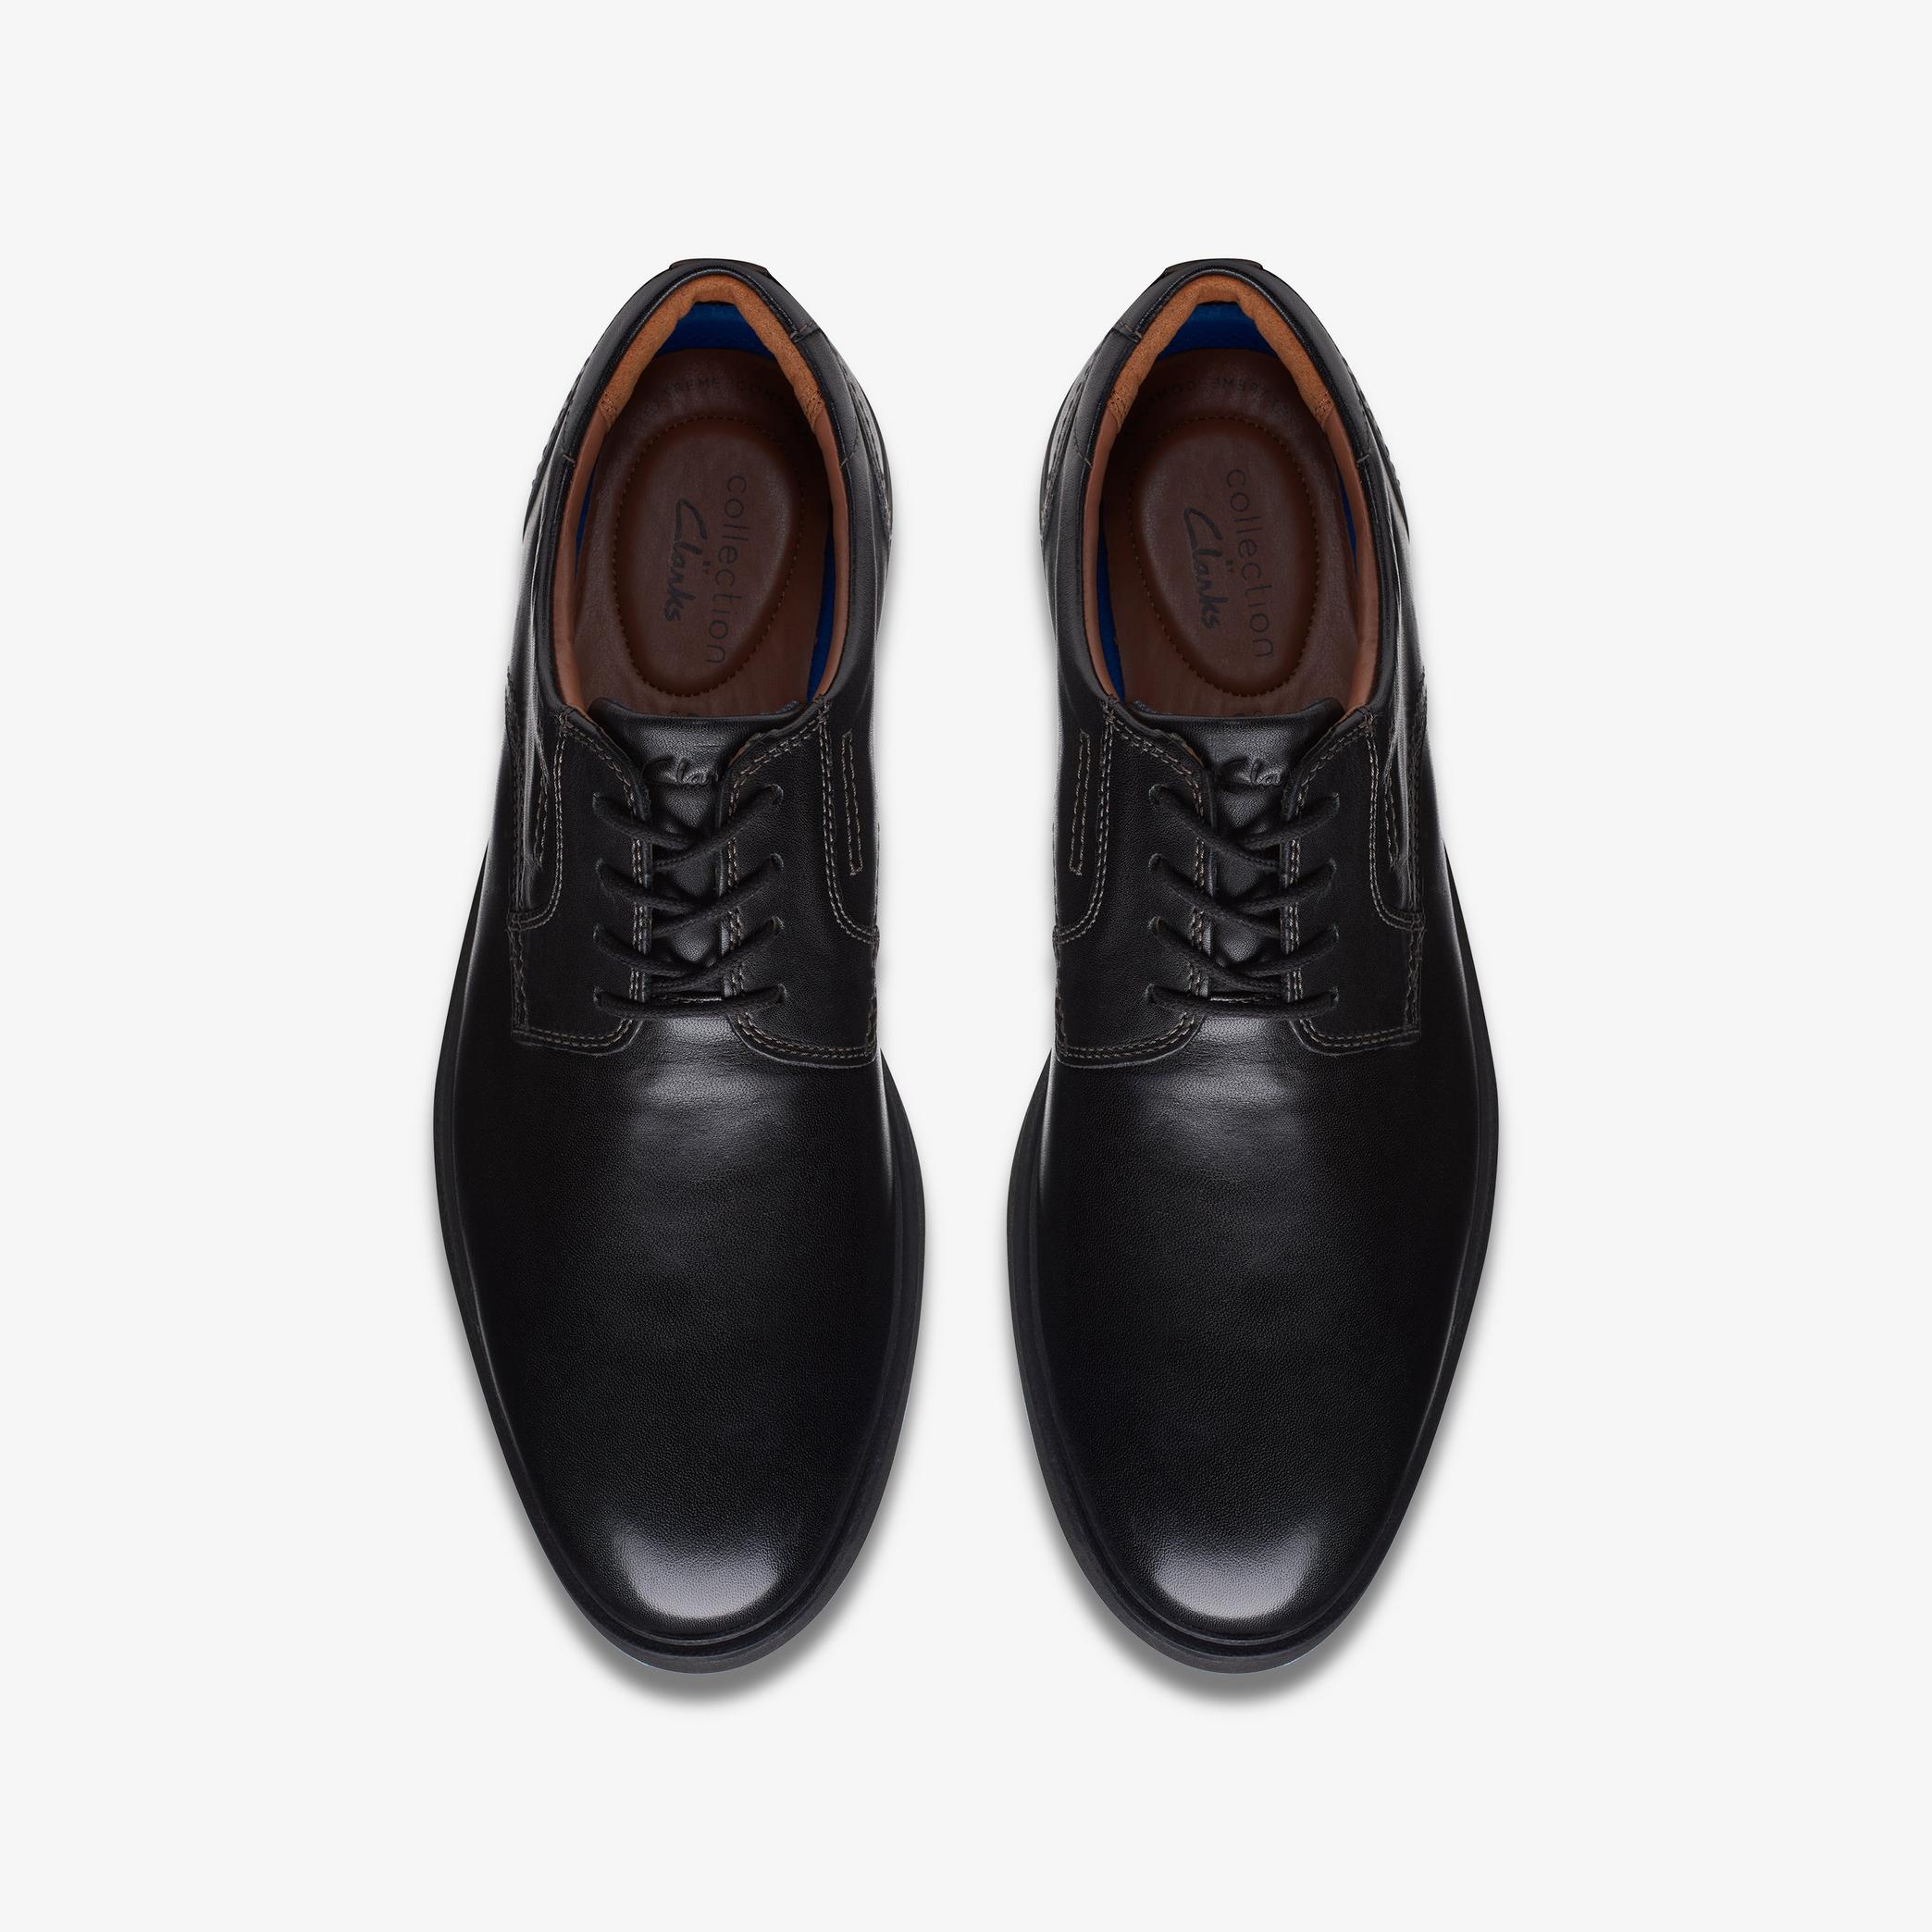 Chaussures Oxford en cuir noir Malwood Lace, vue 6 de 6